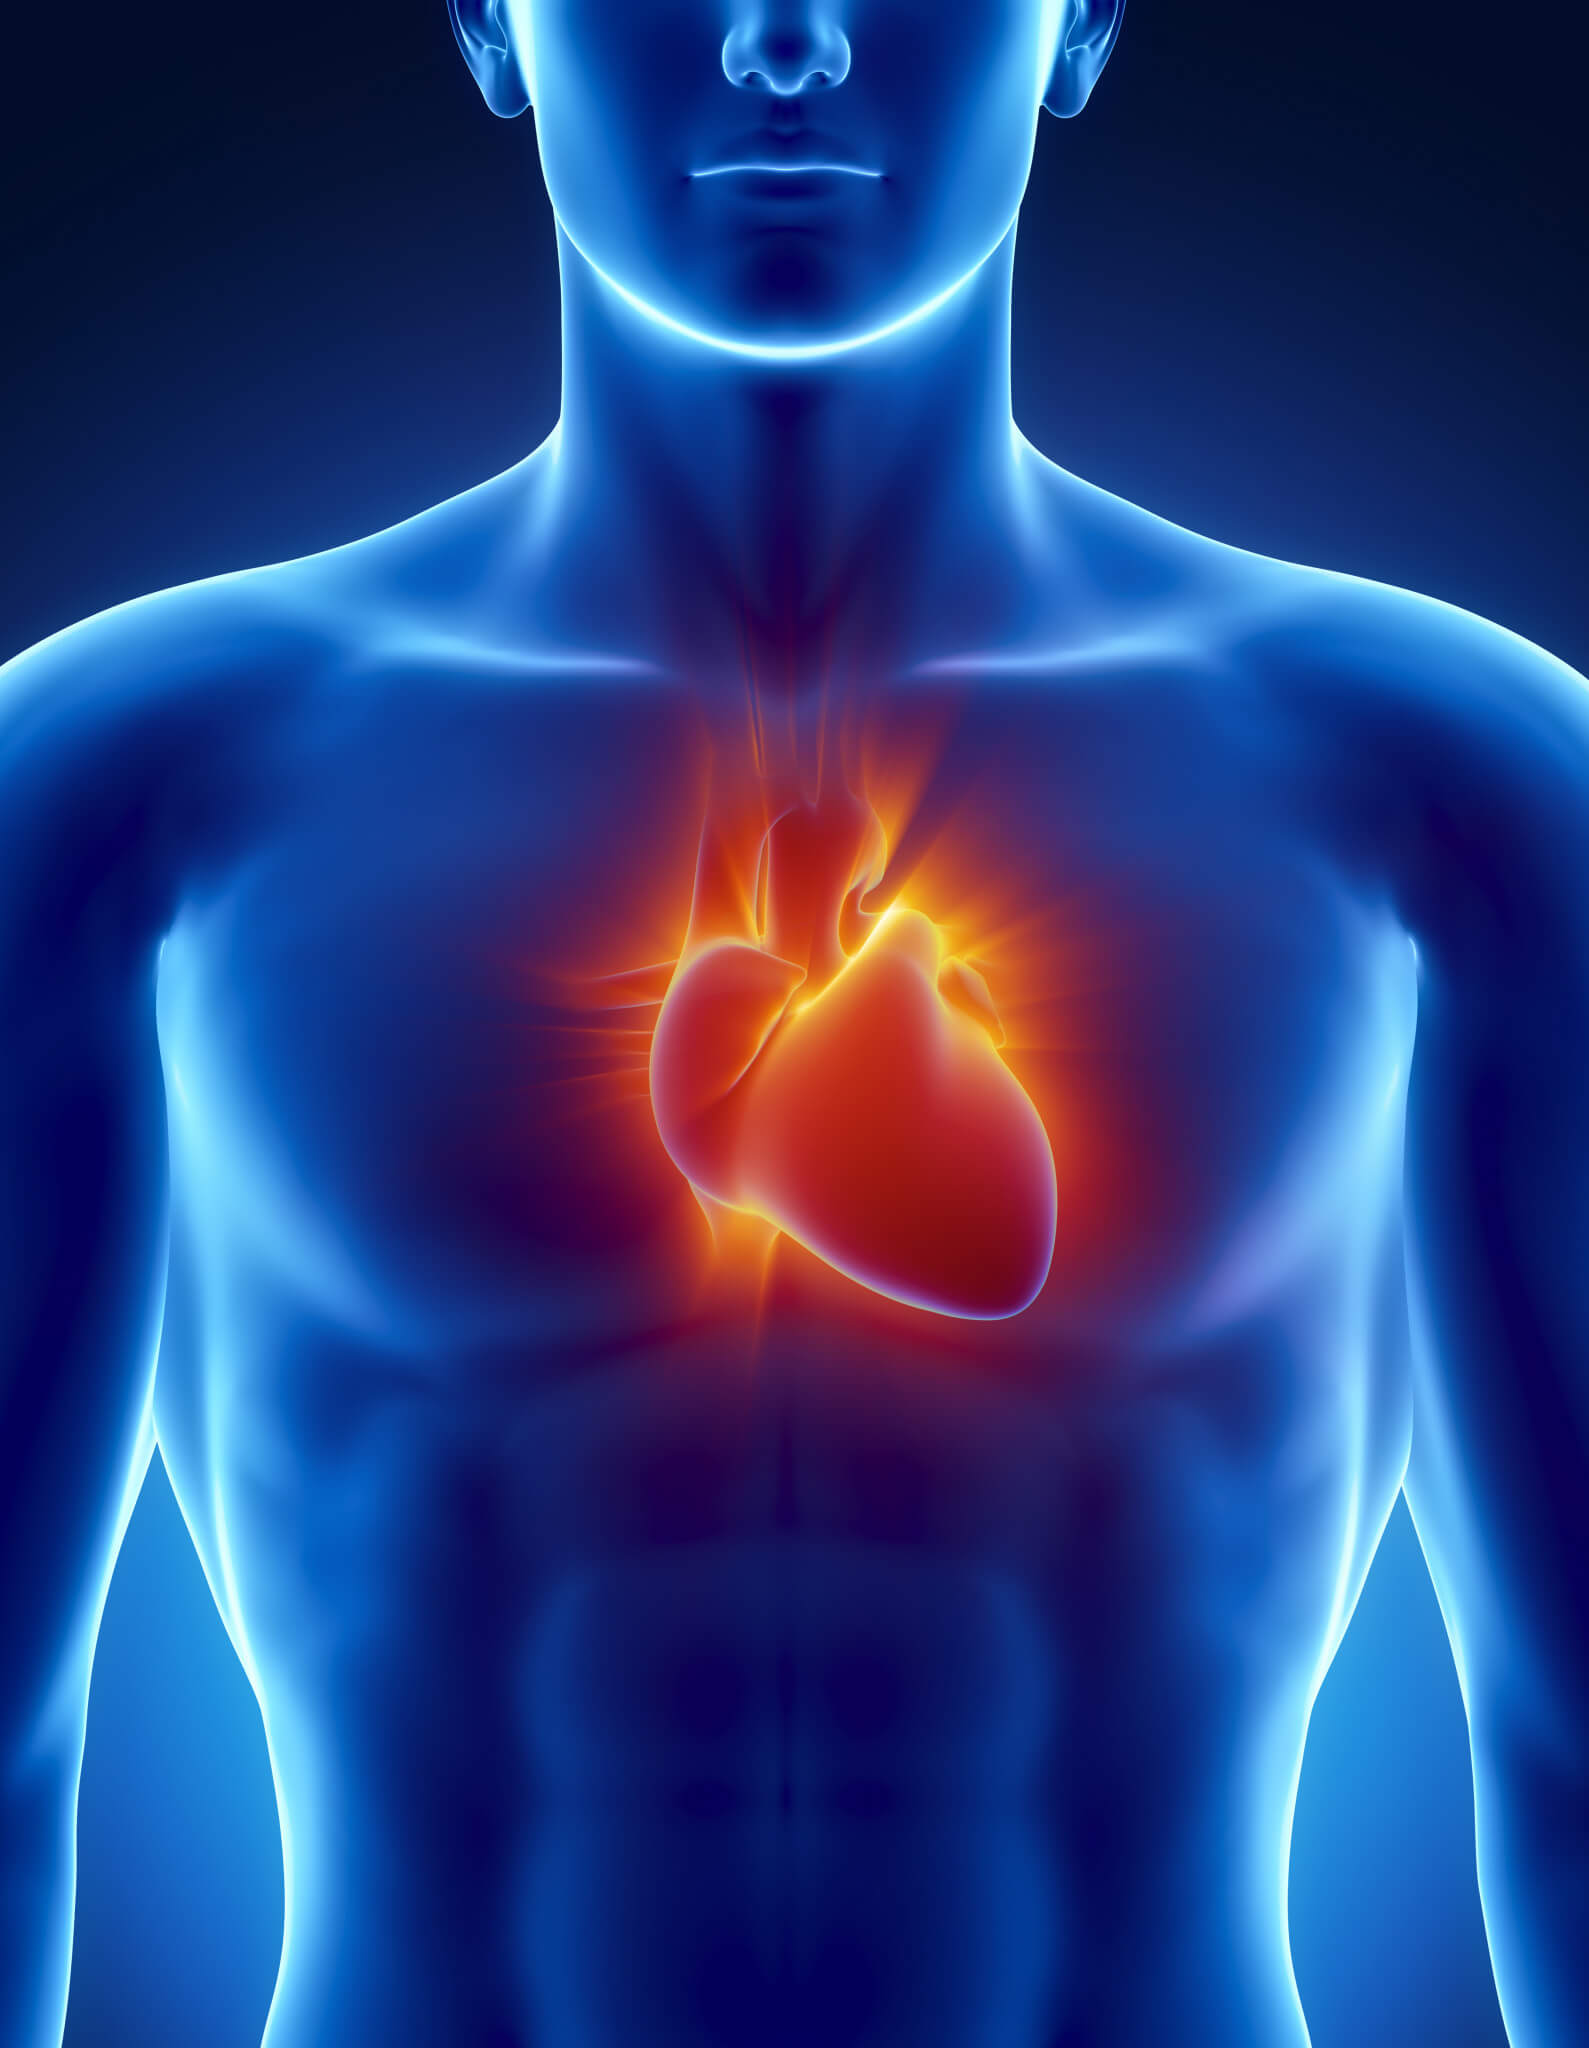 Podpořte zdraví svého srdce: 1. část: nejčastější kardiovaskulární onemocnění